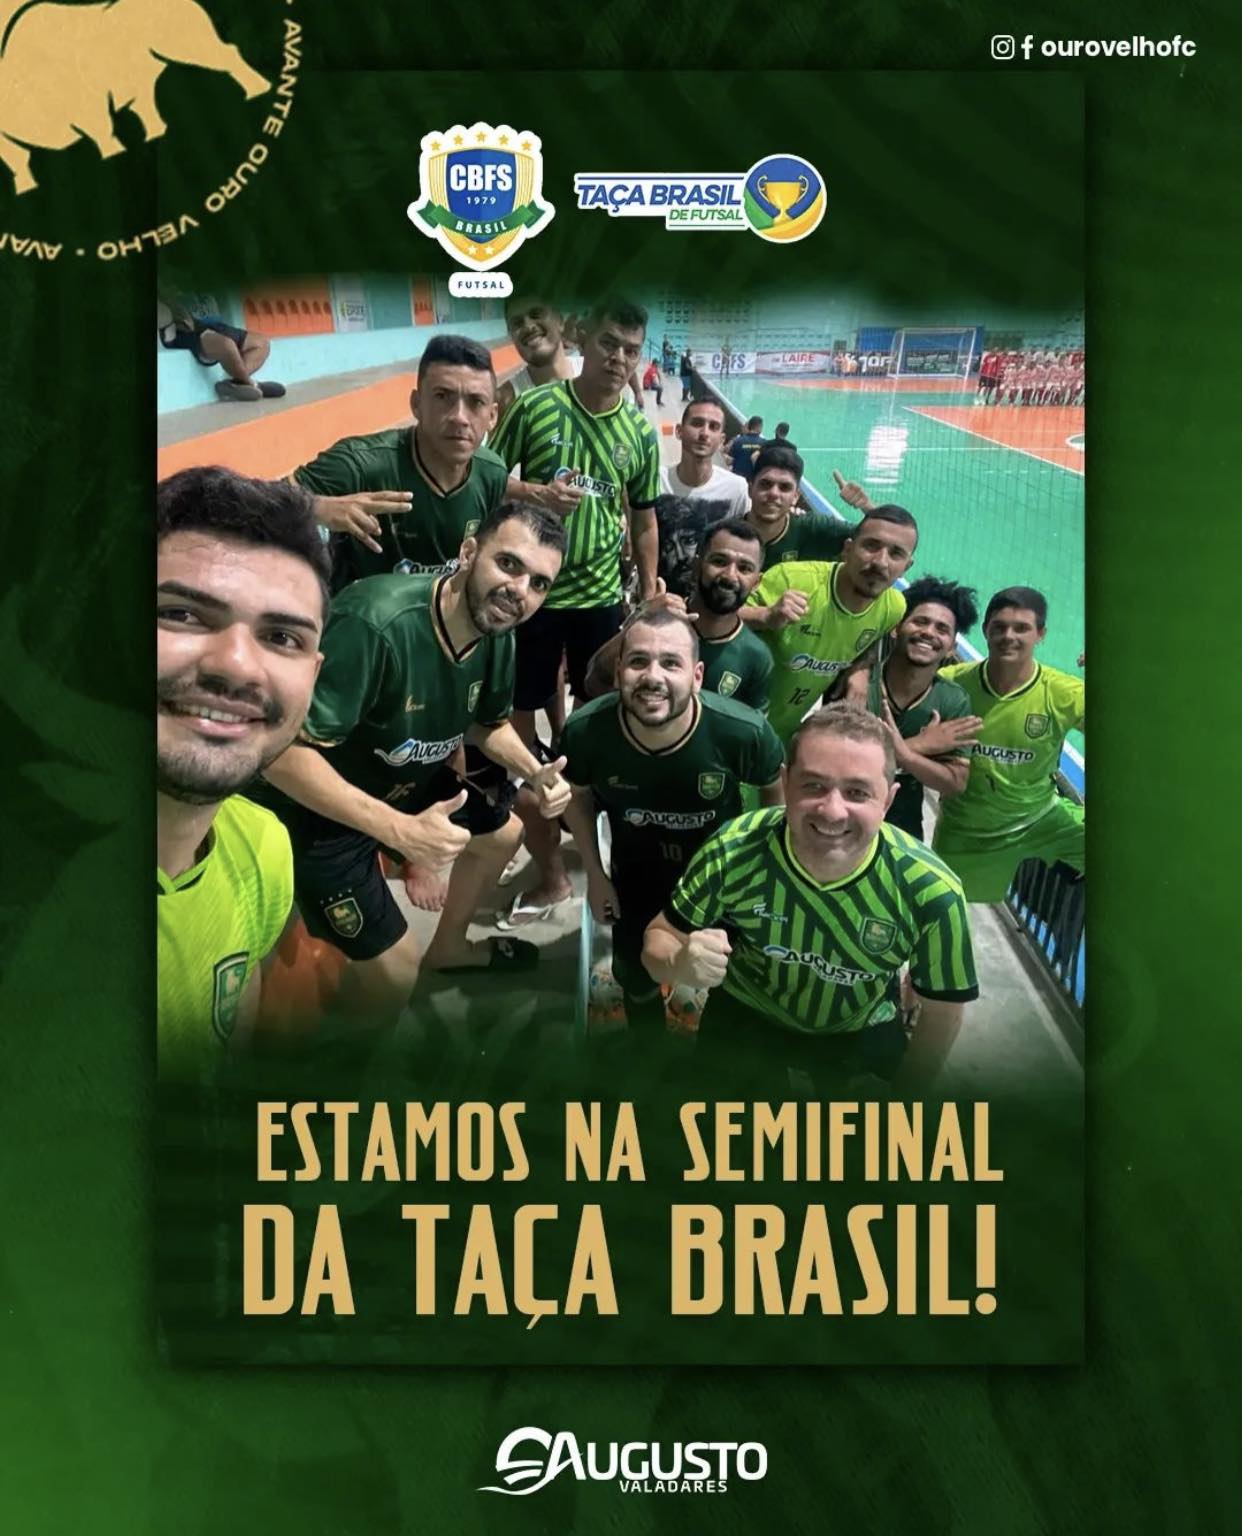 o5-1 Equipe do Ouro Velho goleia adversário, faz história e carimba sua vaga inédita nas semifinais da Taça Brasil de Futsal